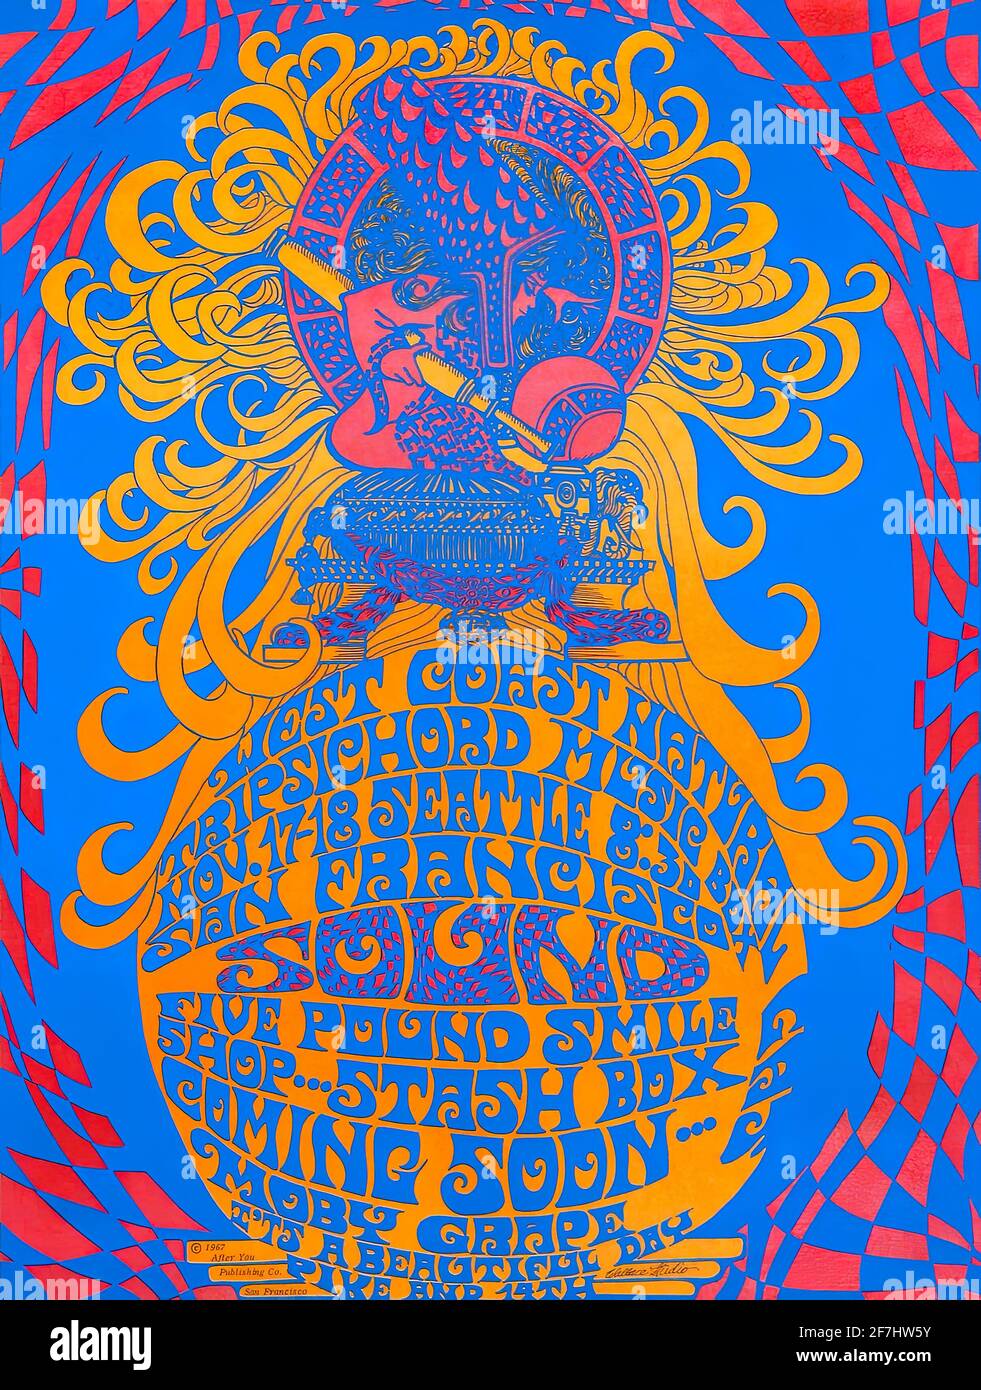 Affiche de musique psychédélique vintage pour la West Coast Natural Tripsichord Music Box Festival à San Francisco Banque D'Images